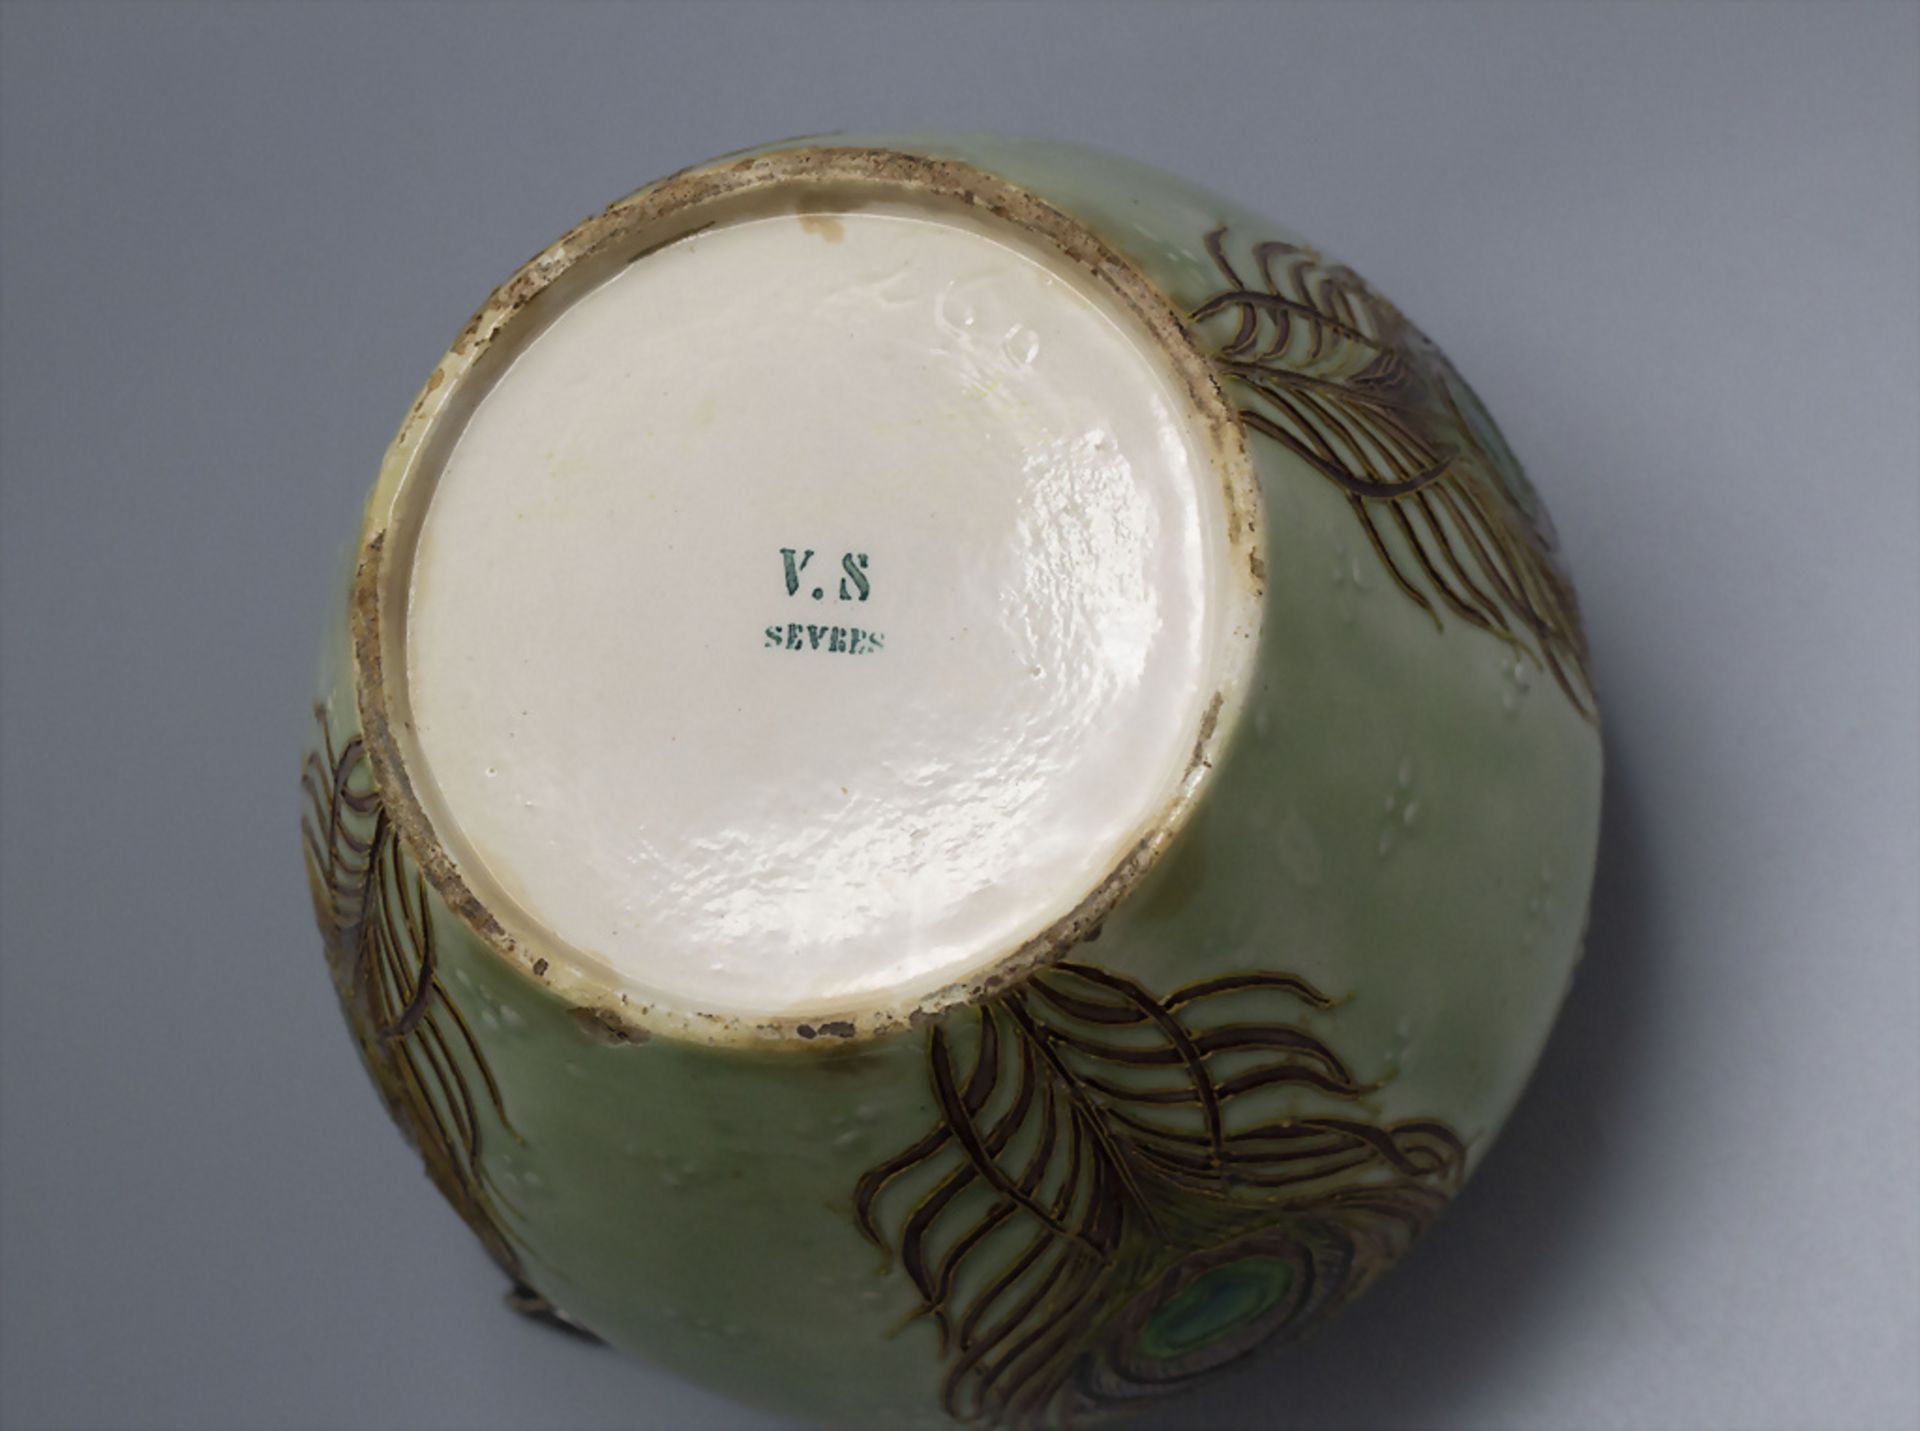 Jugendstil Keksdose mit Silbermontur und Pfauenfedern / An Art Nouveau stoneware biscuit jar ... - Image 4 of 5